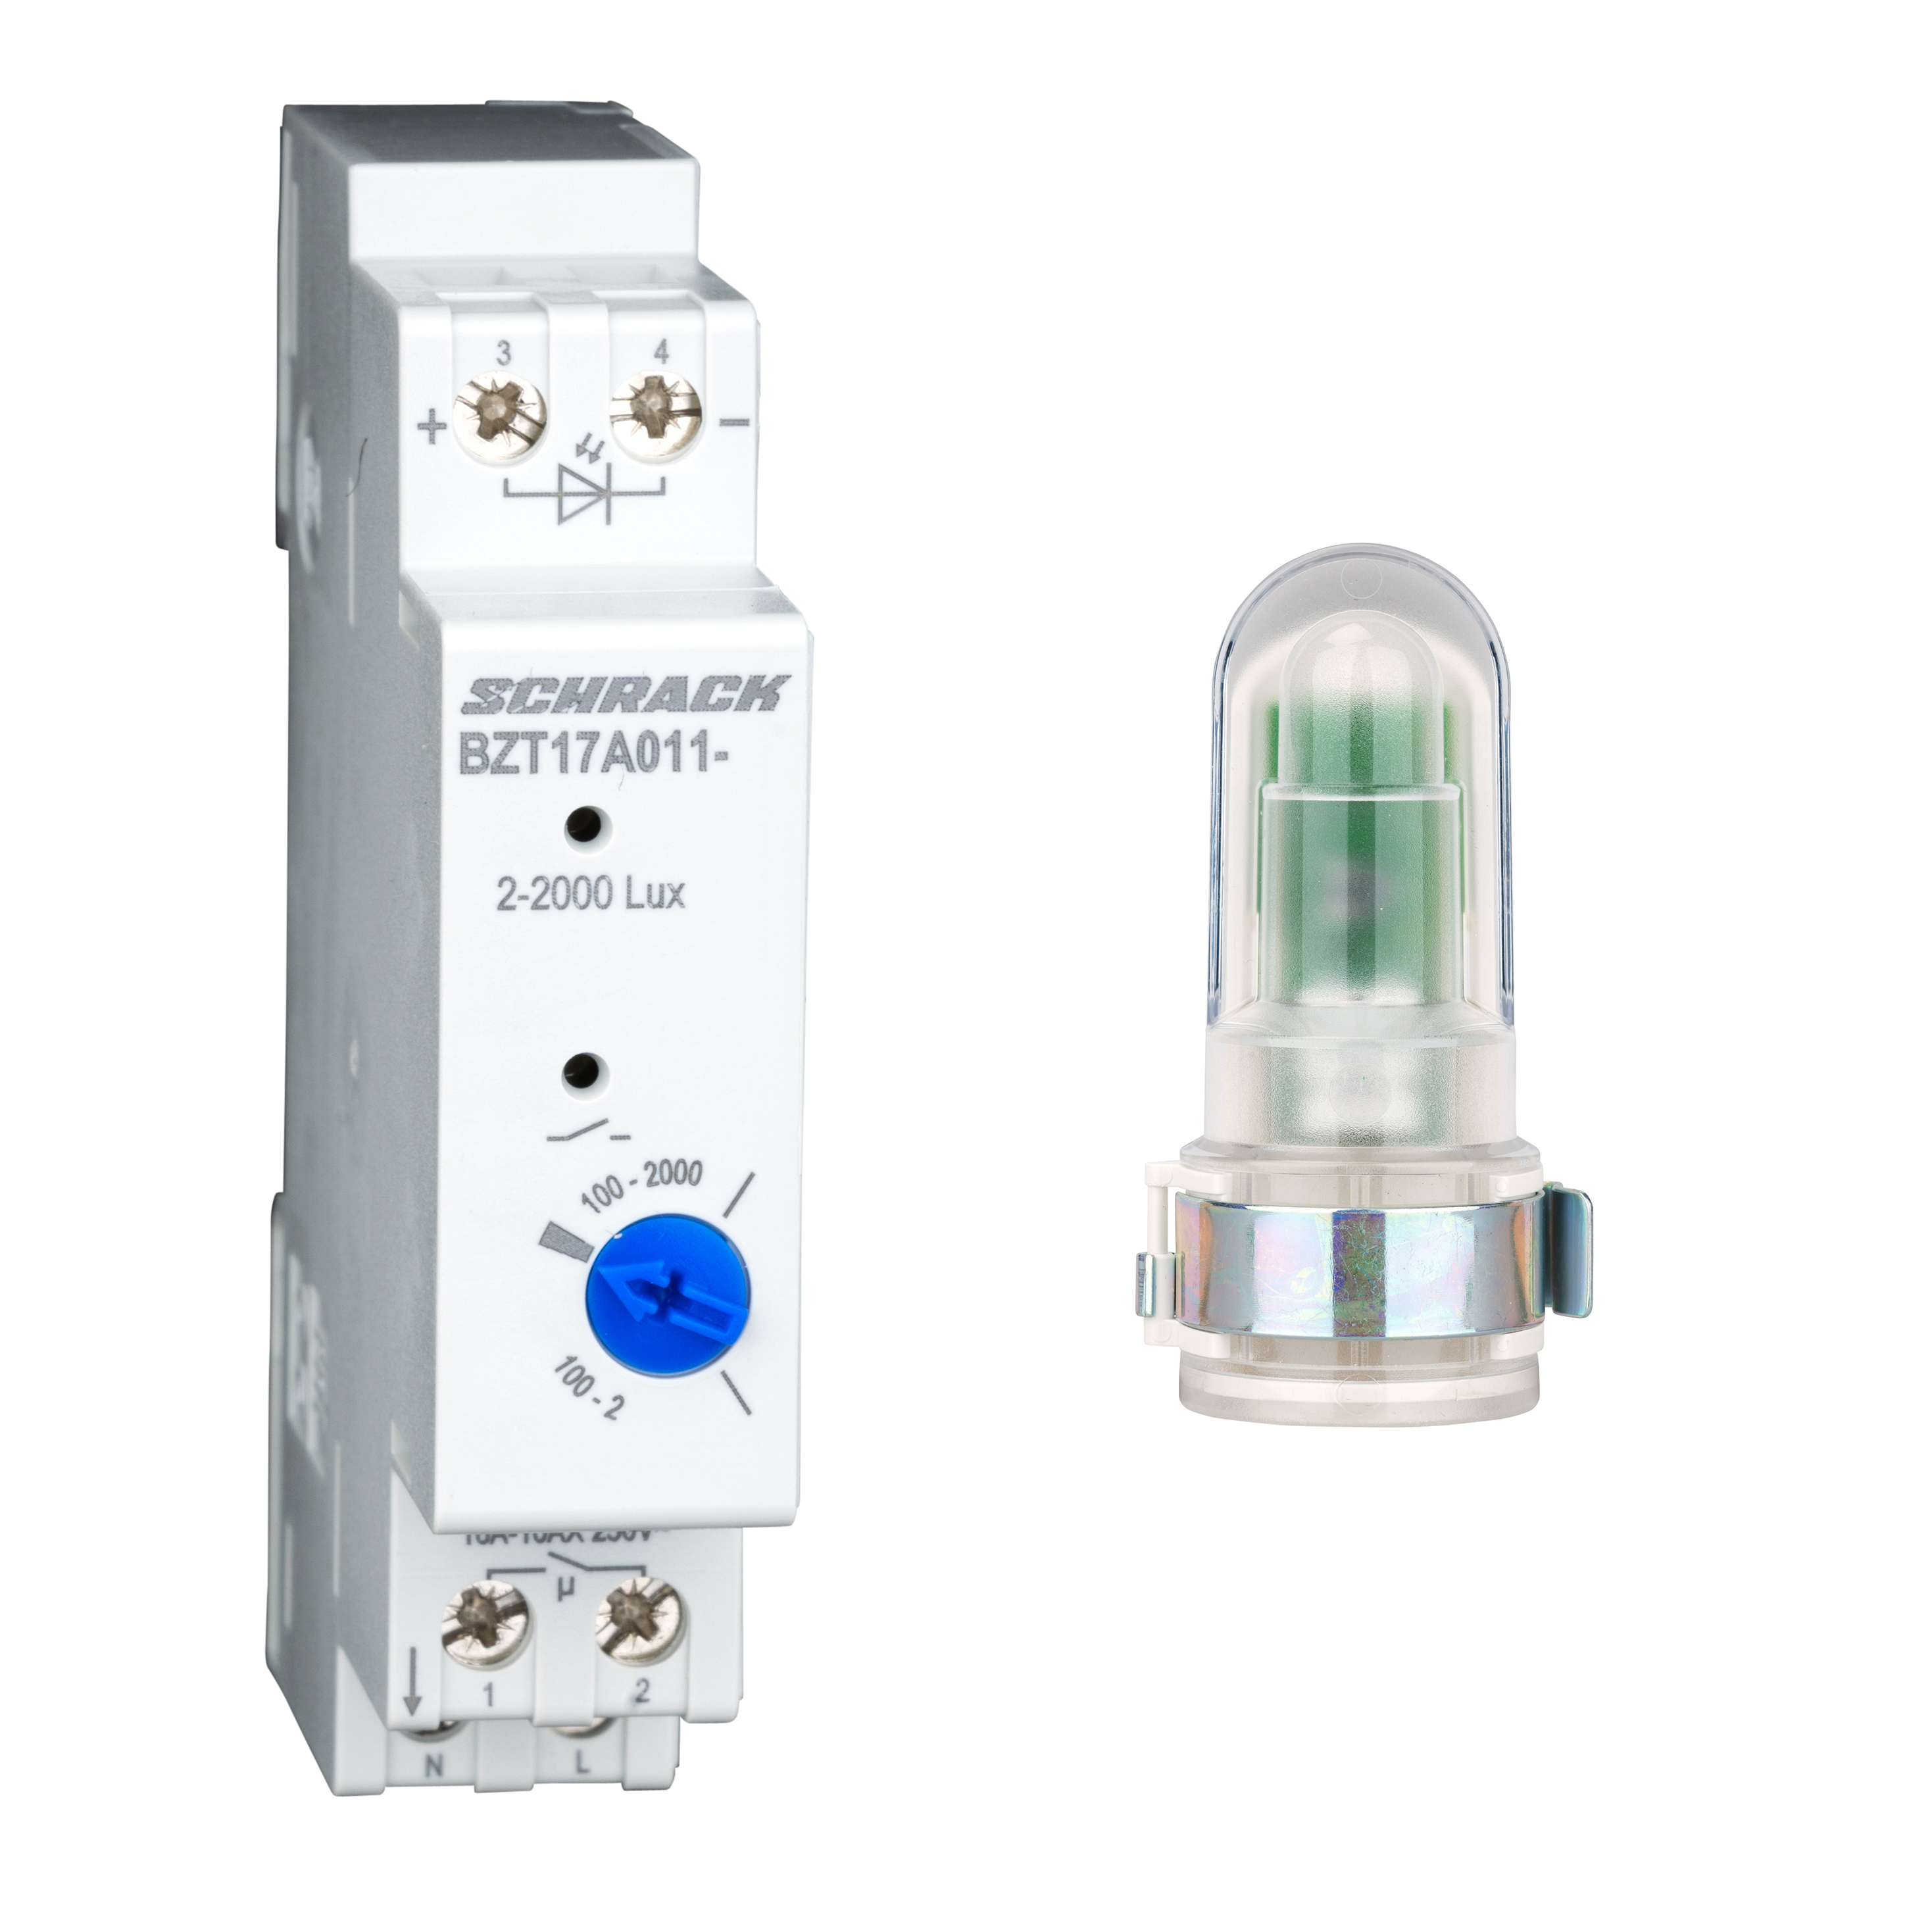 Einbau-Lichtsensor für LUNA Dämmerungsschalter #elektriker #electricia